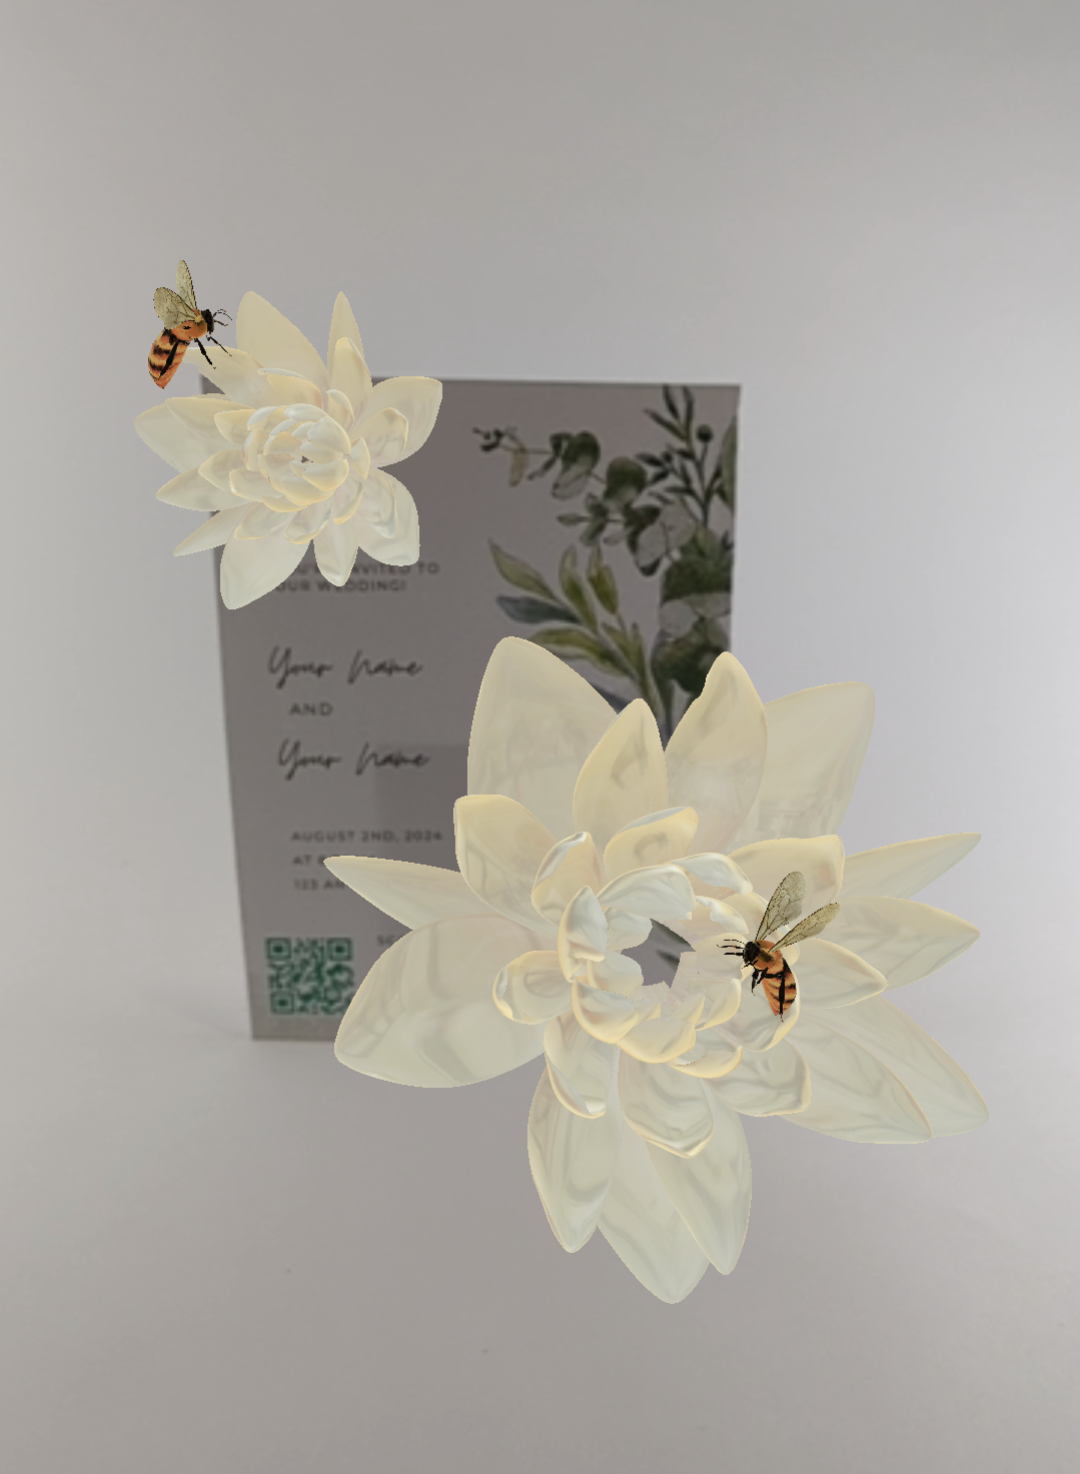 White Lotus Flowers Blooming with Honeybees